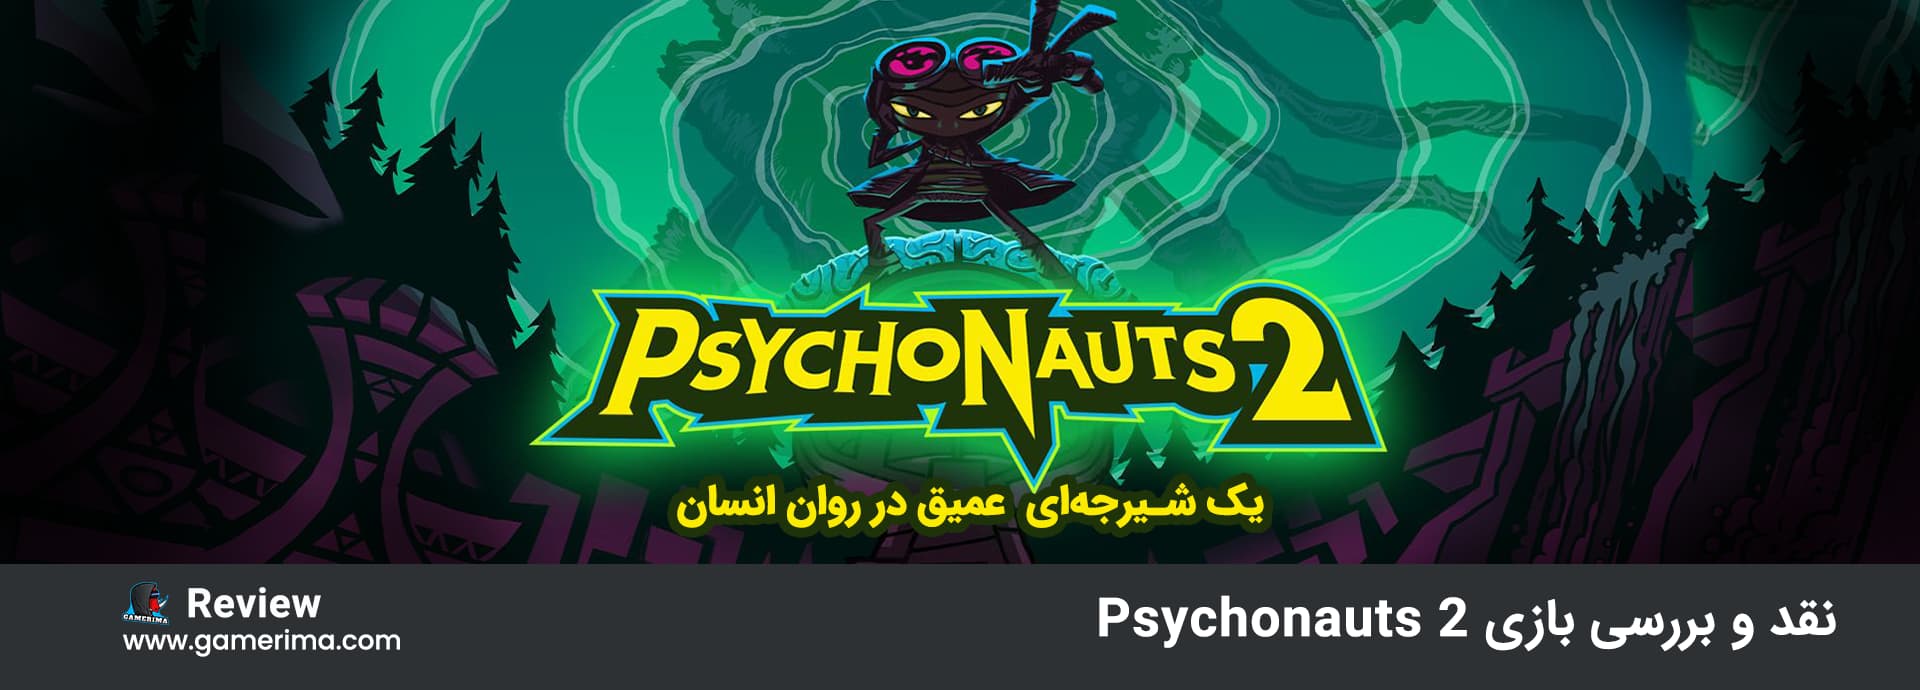 psychonauts 2 review